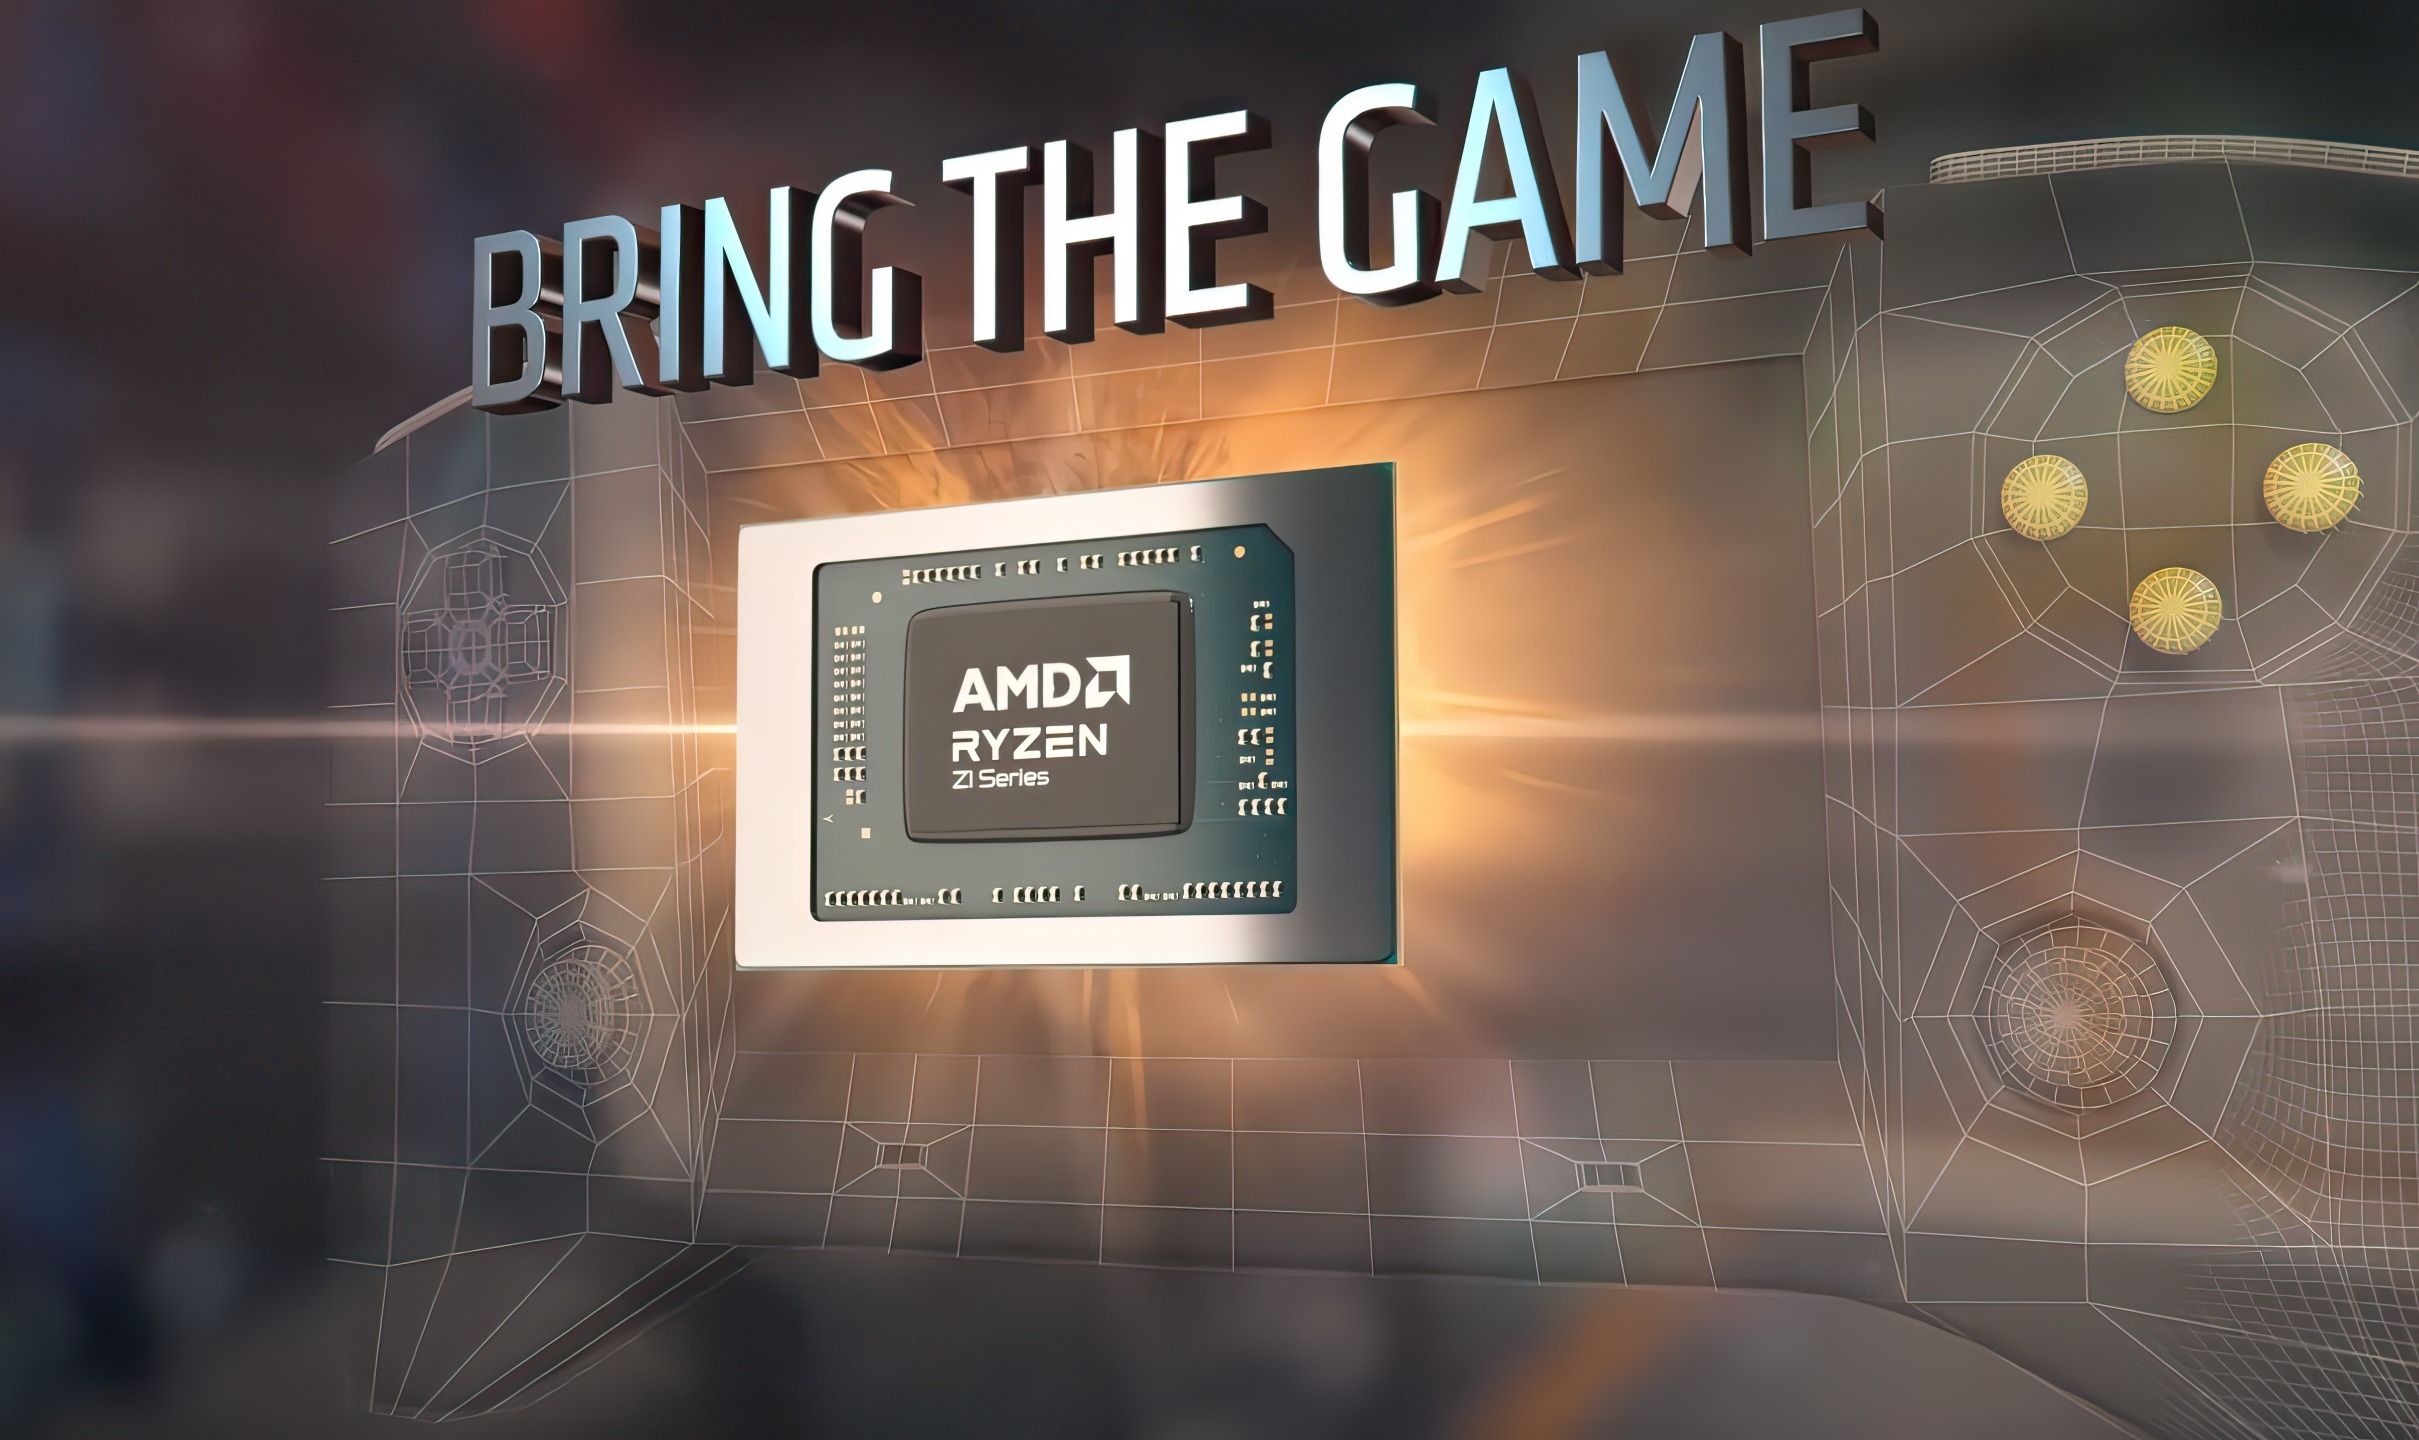 AMD's New Ryzen Z1 Extreme: 15W APU Beats Core i9-9900K That Uses 95W